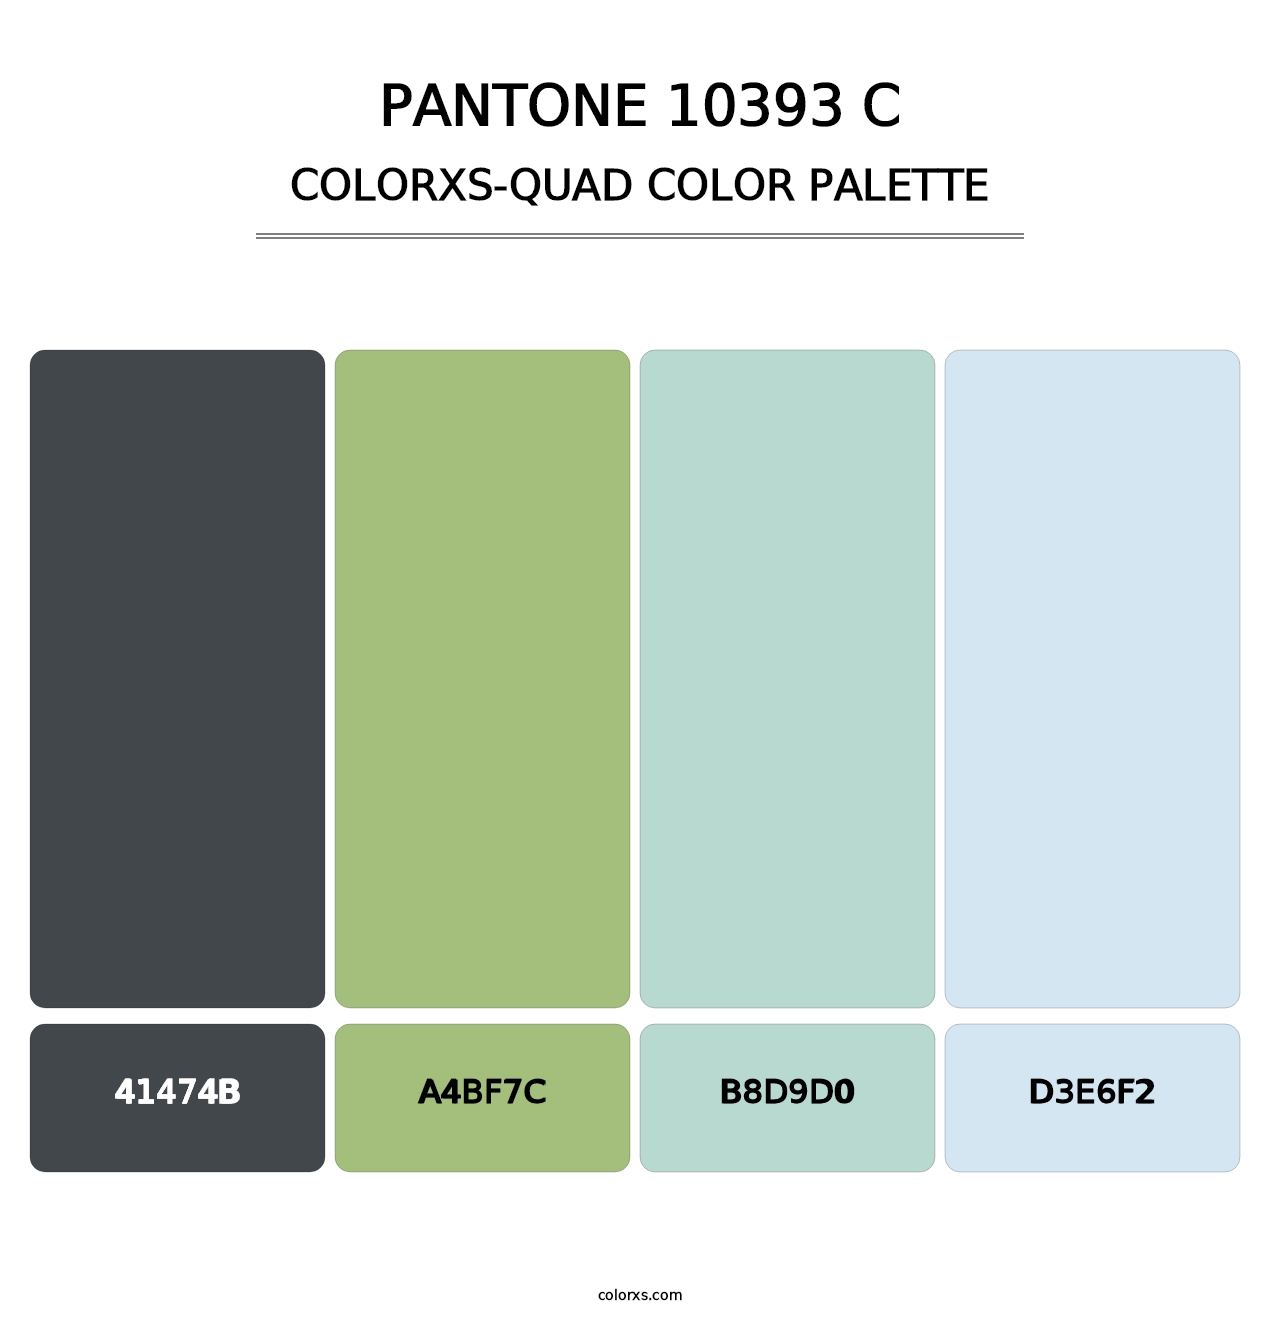 PANTONE 10393 C - Colorxs Quad Palette